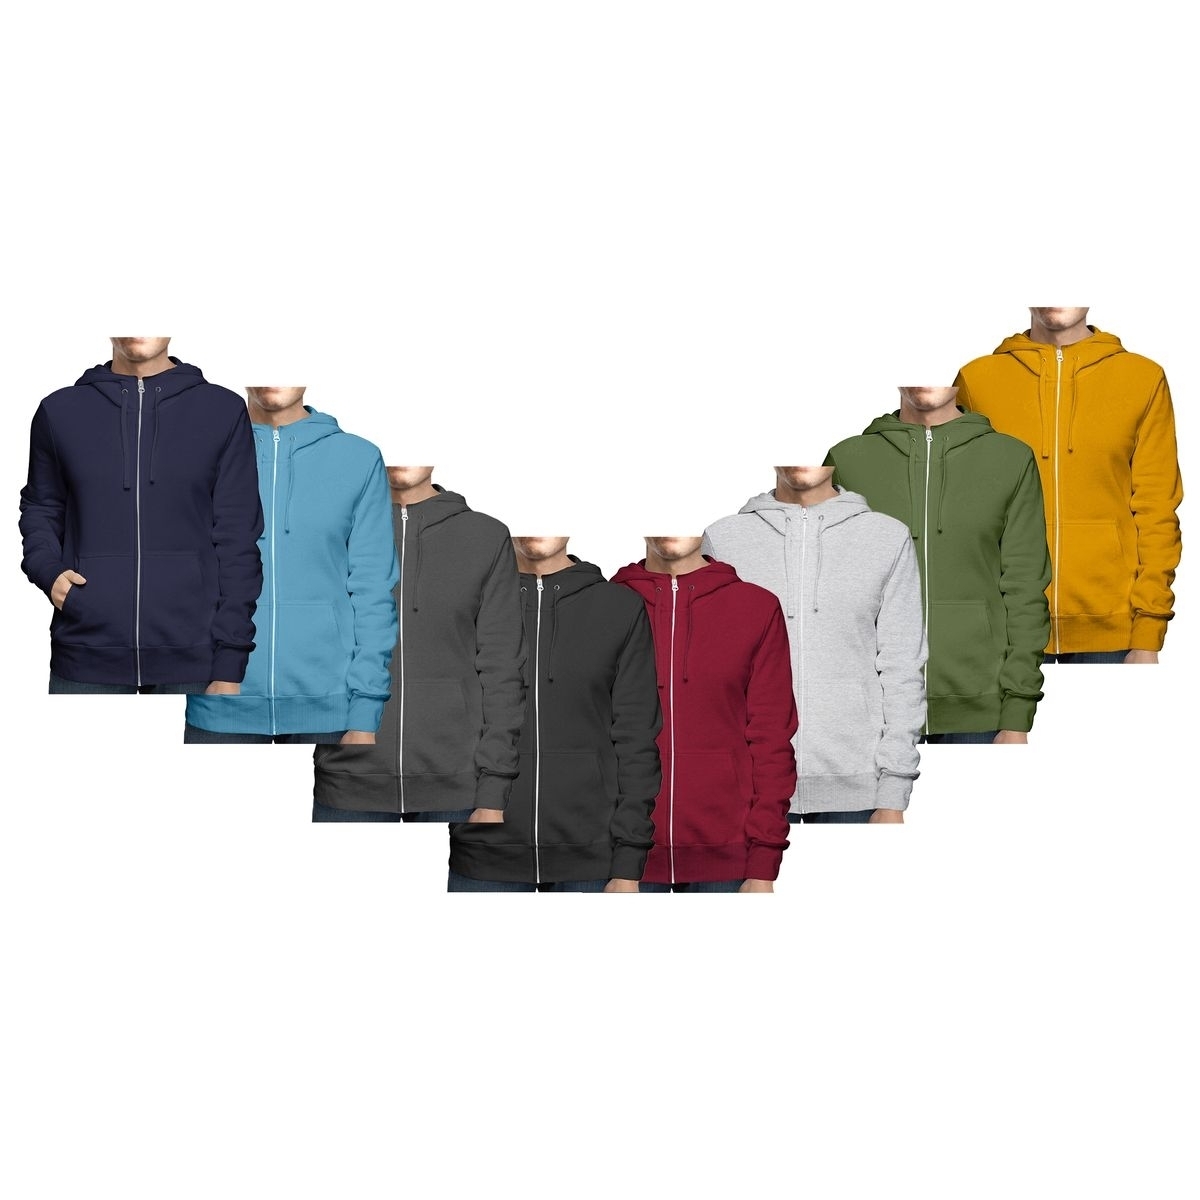 Men's Winter Warm Cozy Full Zip-Up Fleece Lined Soft Hoodie Sweatshirt - Black, Medium